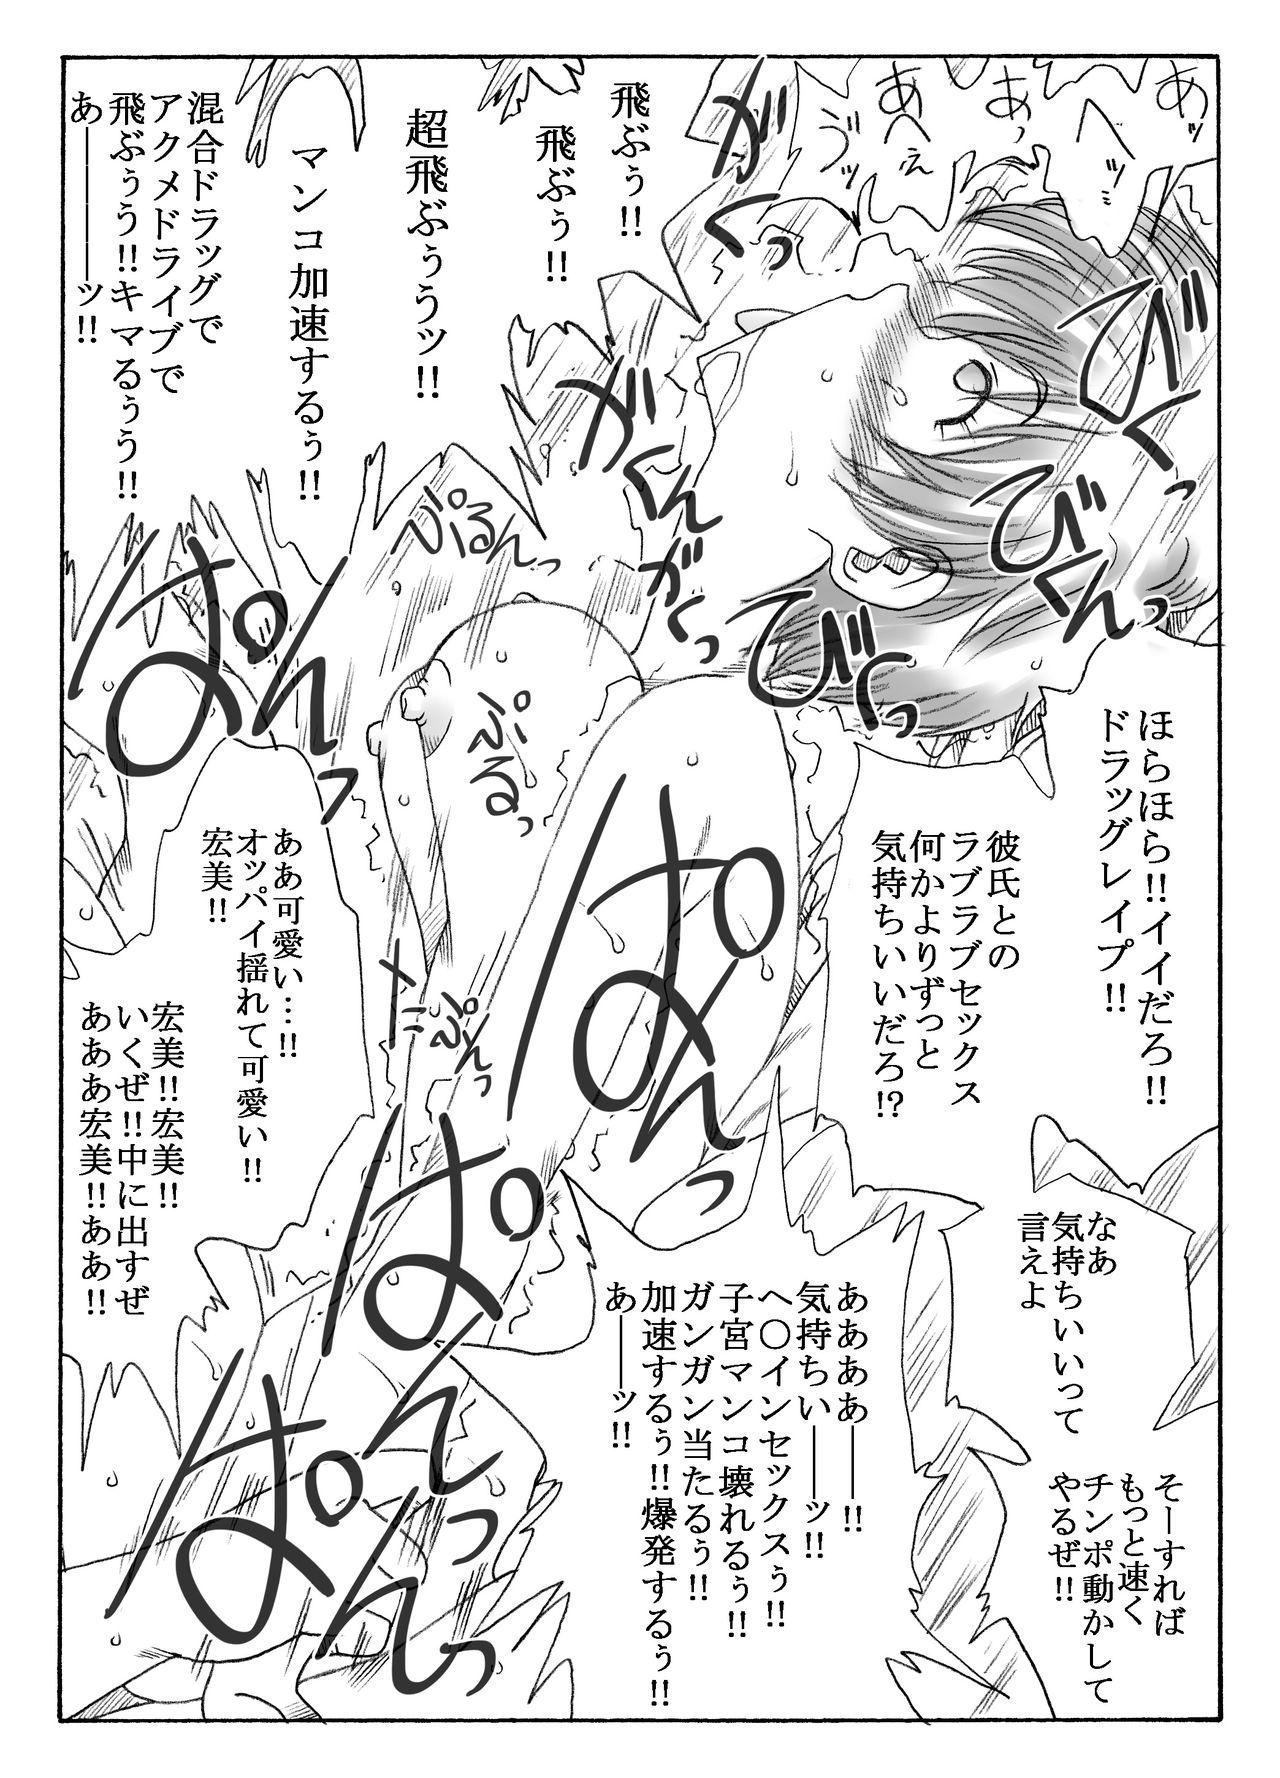 Hairy Sexy kusuridukinisare ryoujyokusareru senseito seitotachi - Original Old Man - Page 5